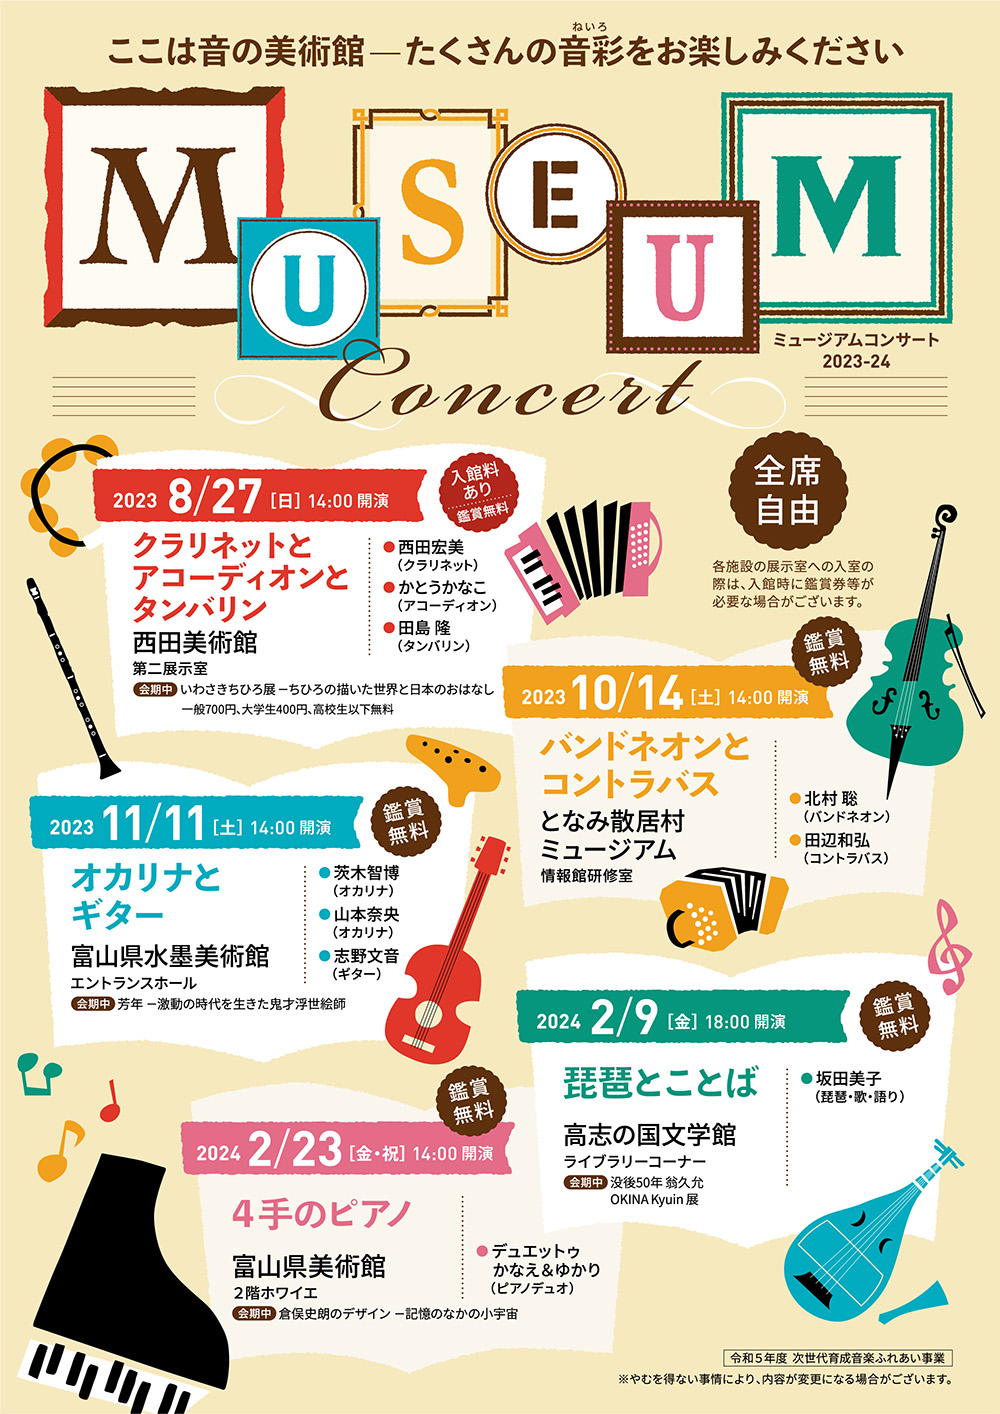 MUSEUM Concert ここは音の美術館 ― たくさんの音彩(ねいろ)をお楽しみください